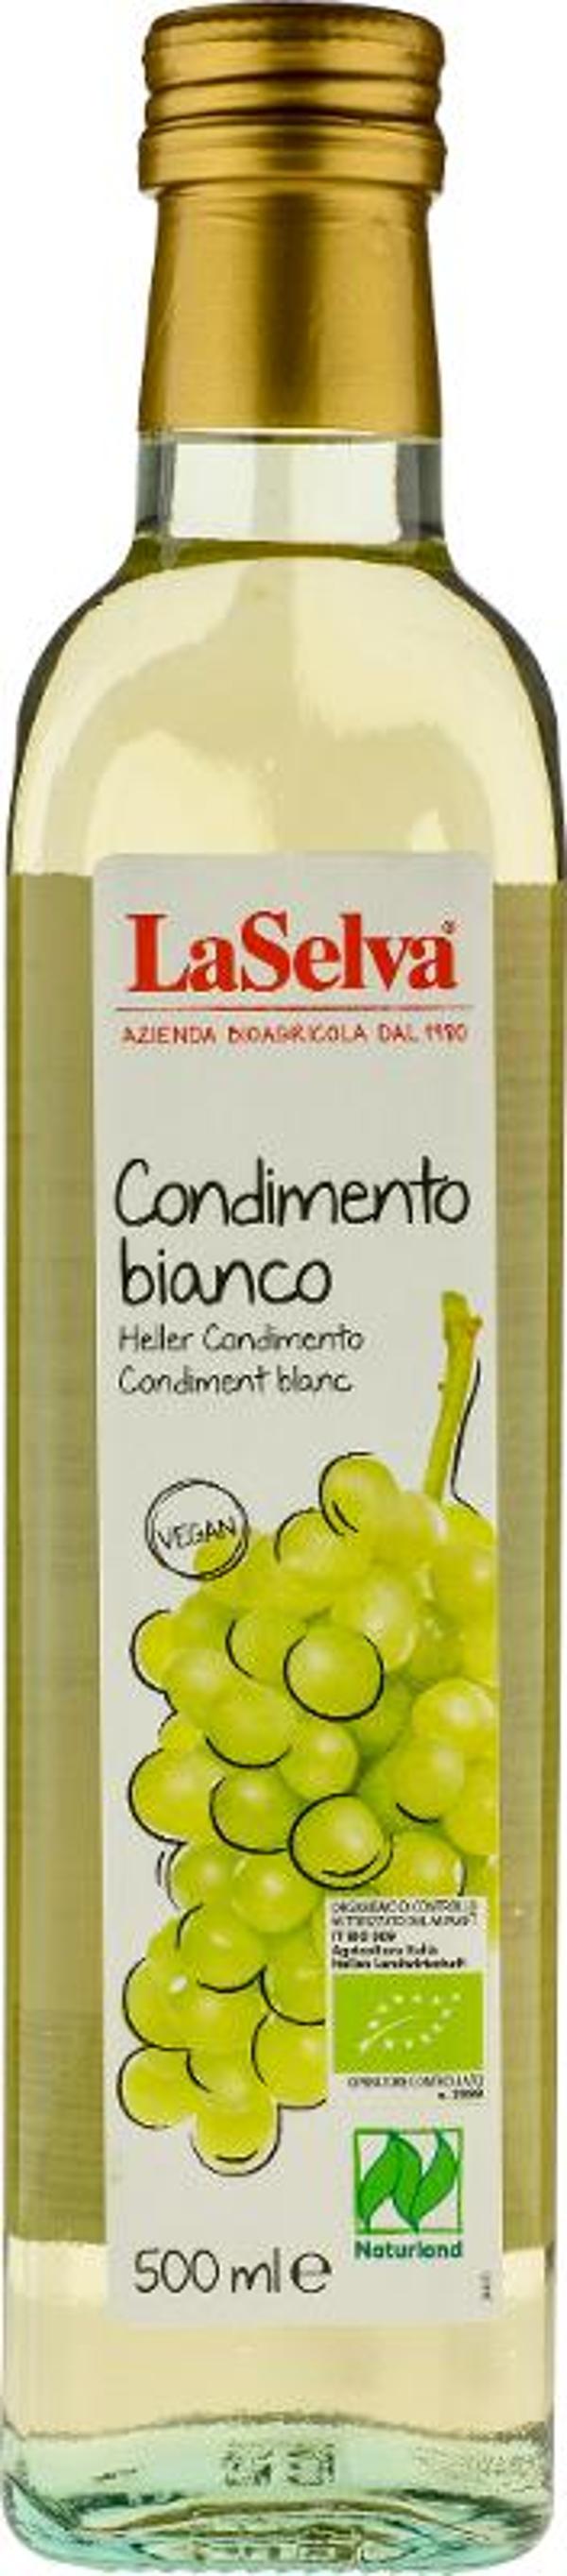 Produktfoto zu Condimento Bianco Weißweinessig